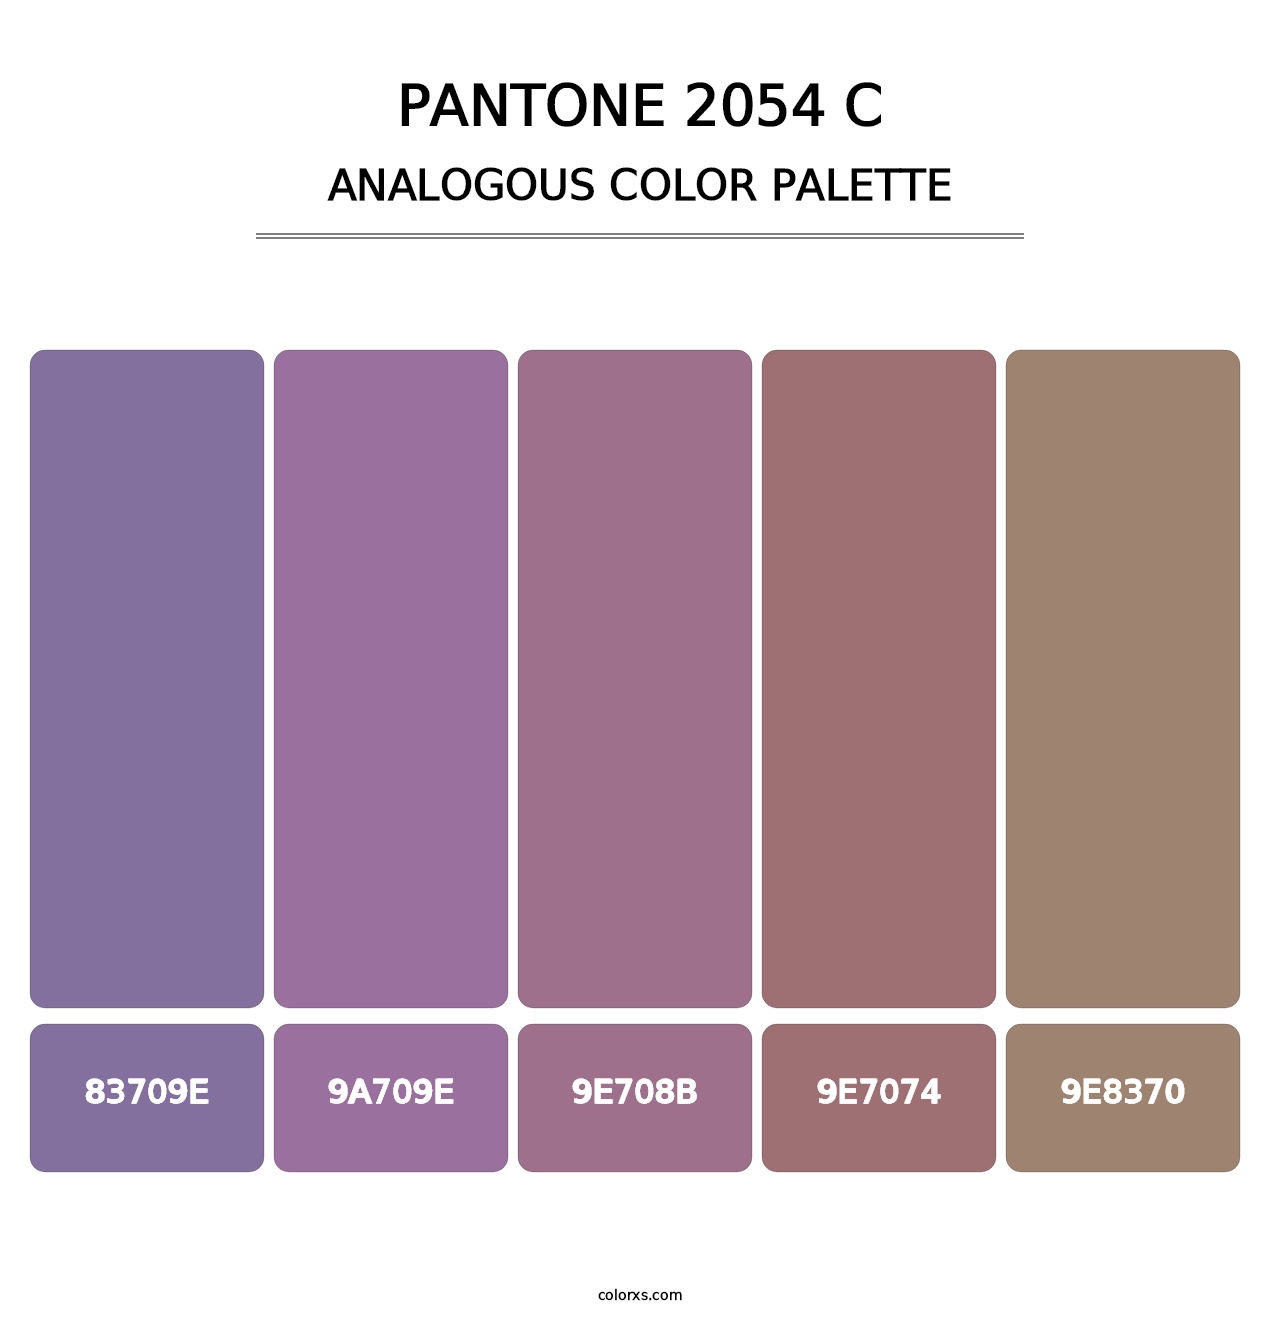 PANTONE 2054 C - Analogous Color Palette